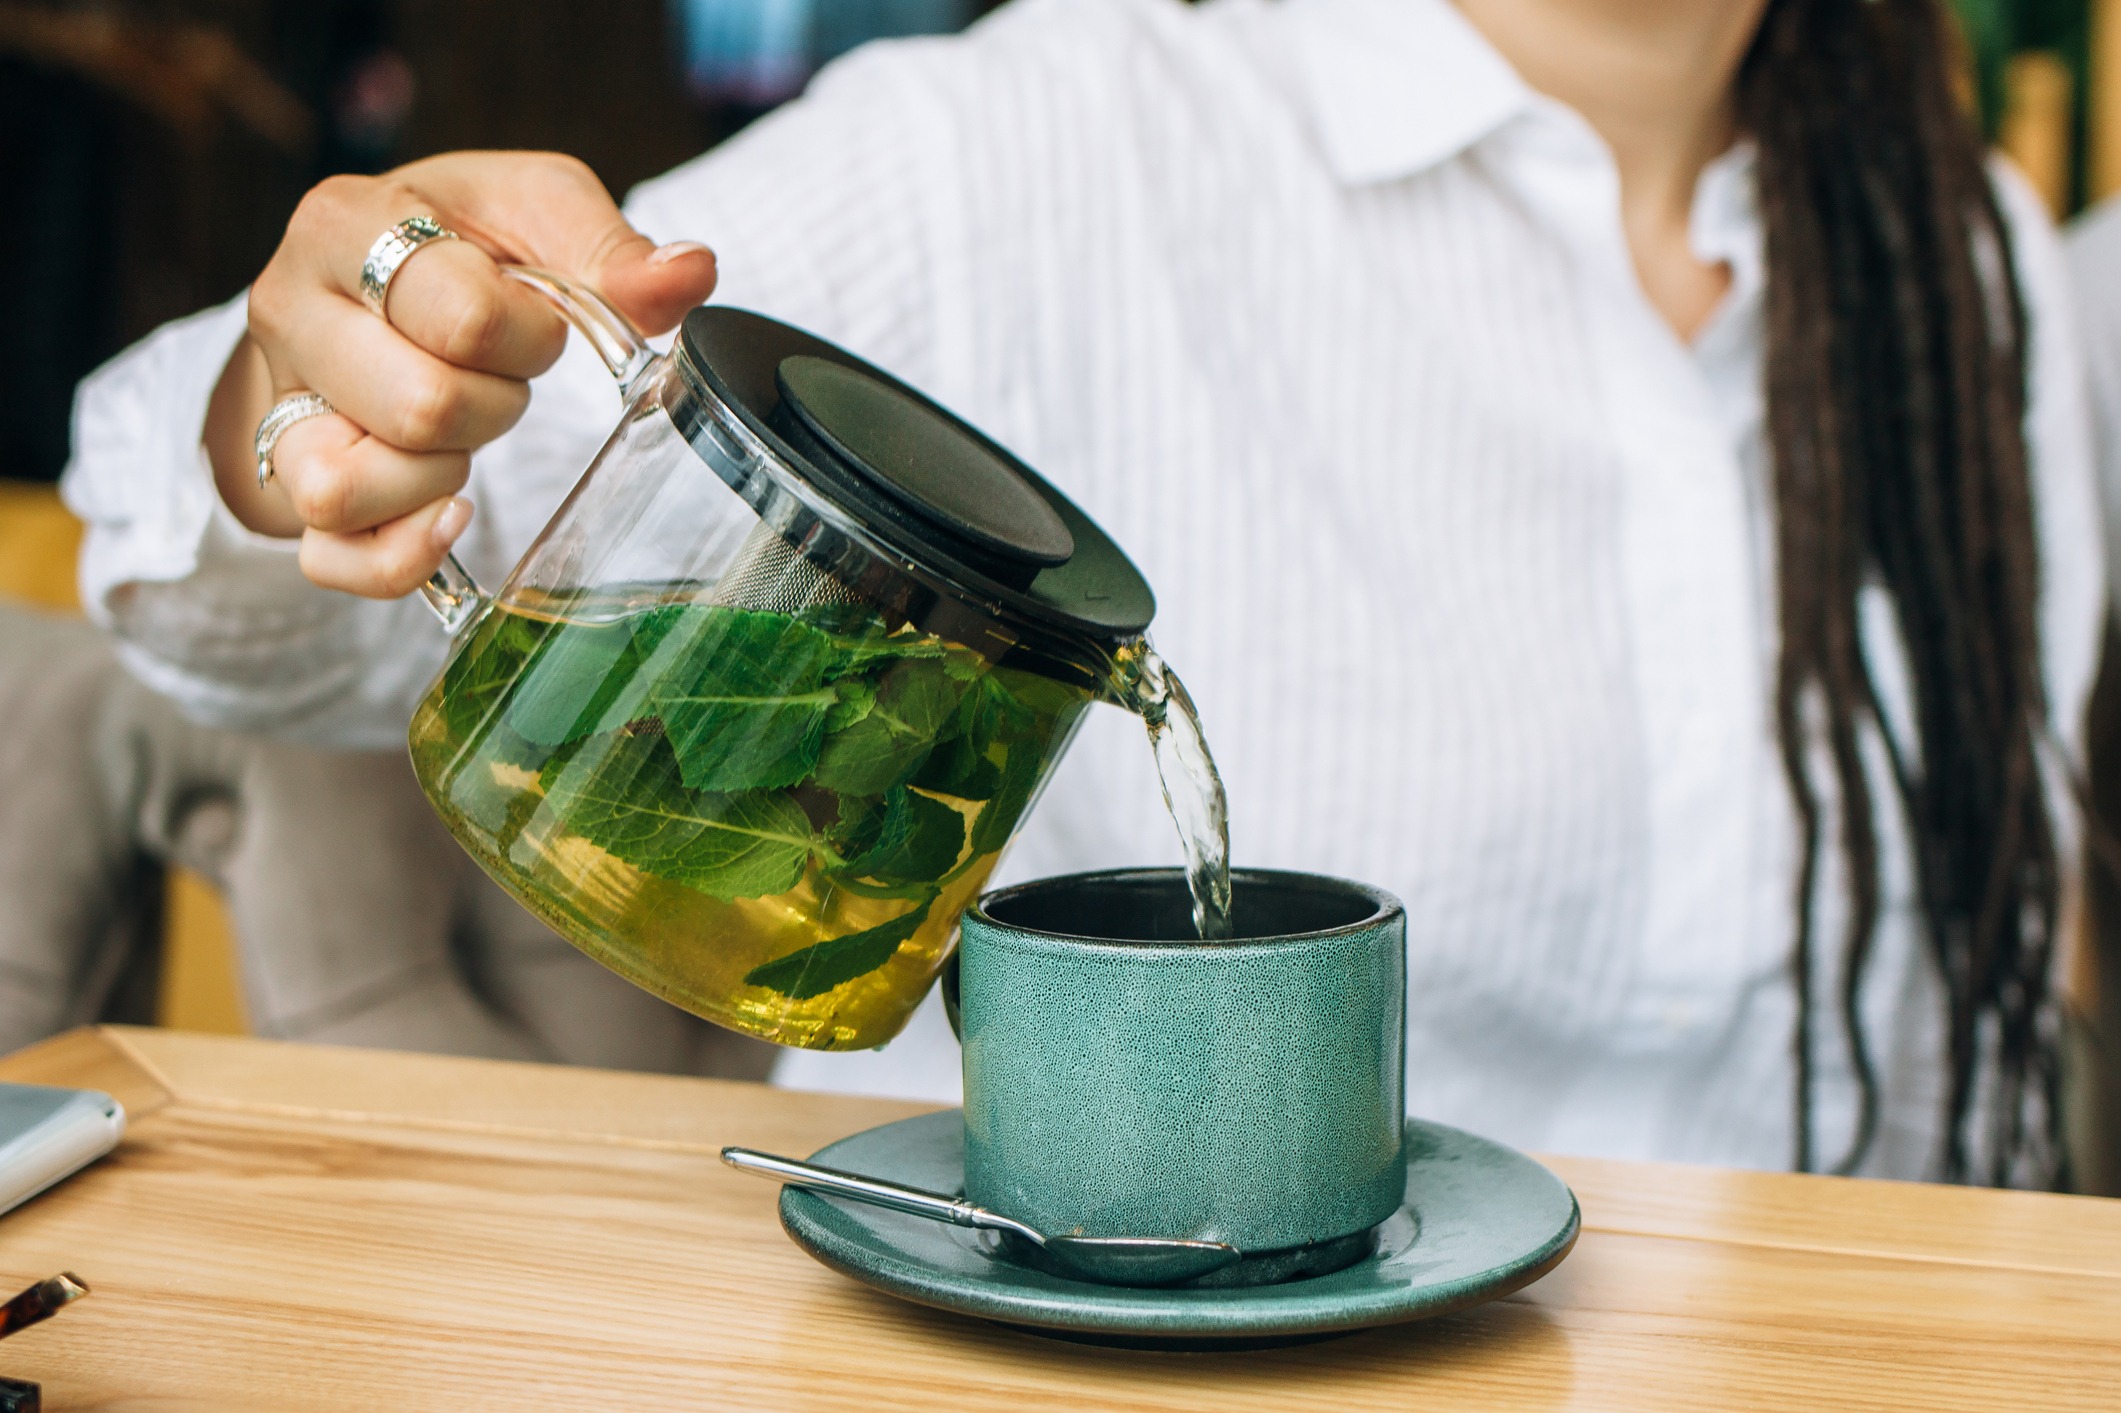 Happy Detox Tea - Thé minceur pour perte de poids - Tisane minceur